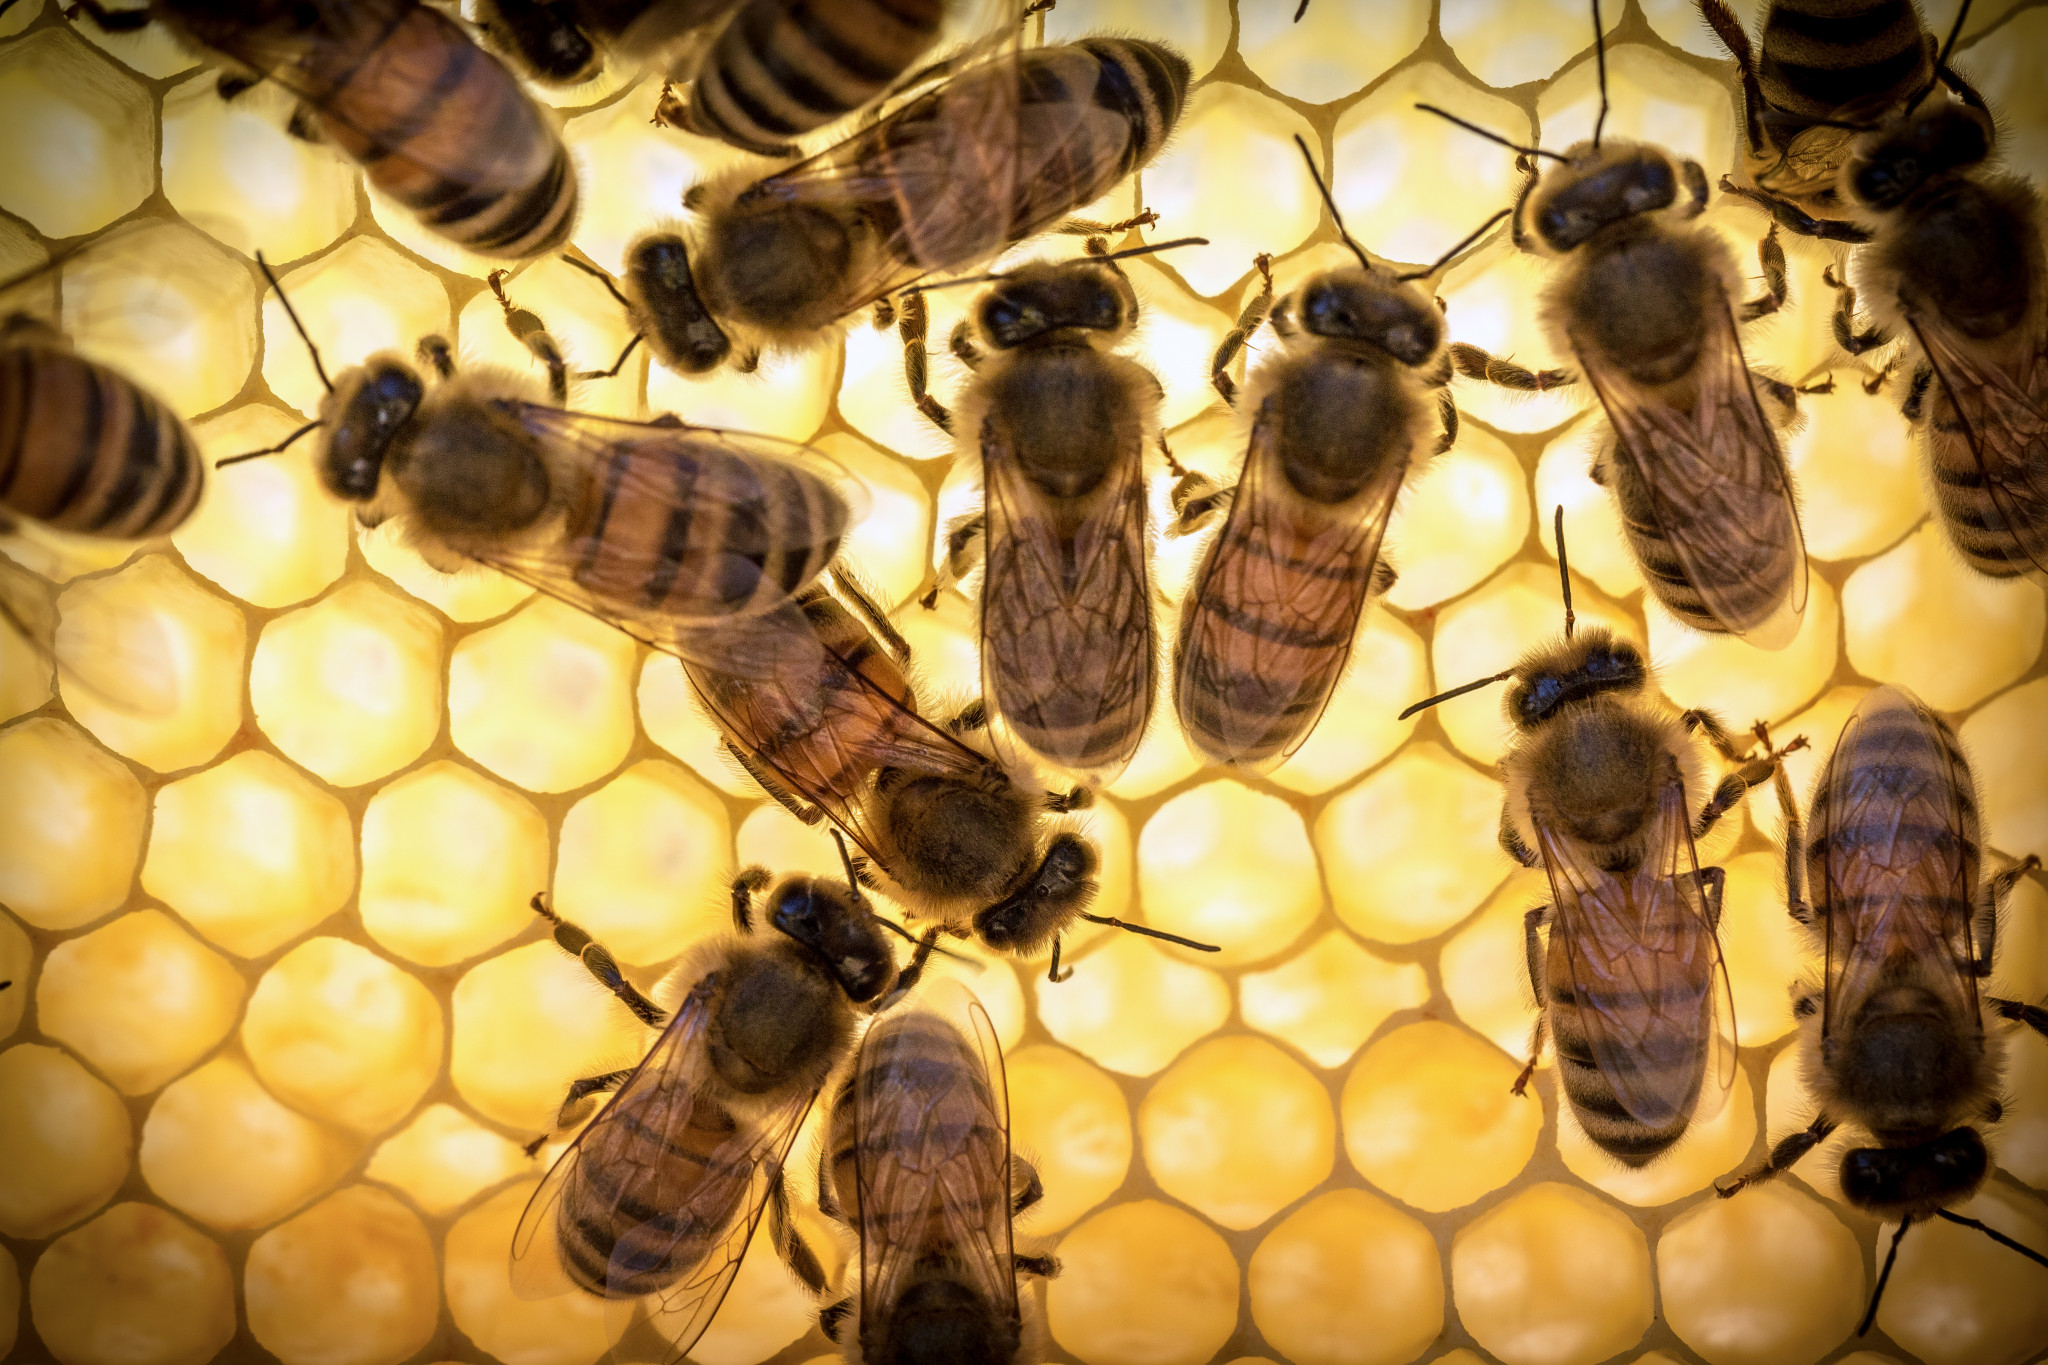 Bee royal gelé anbefales ikke å bruke om natten, da det under påvirkning øker den nervøse aktiviteten og mulig søvnløshet